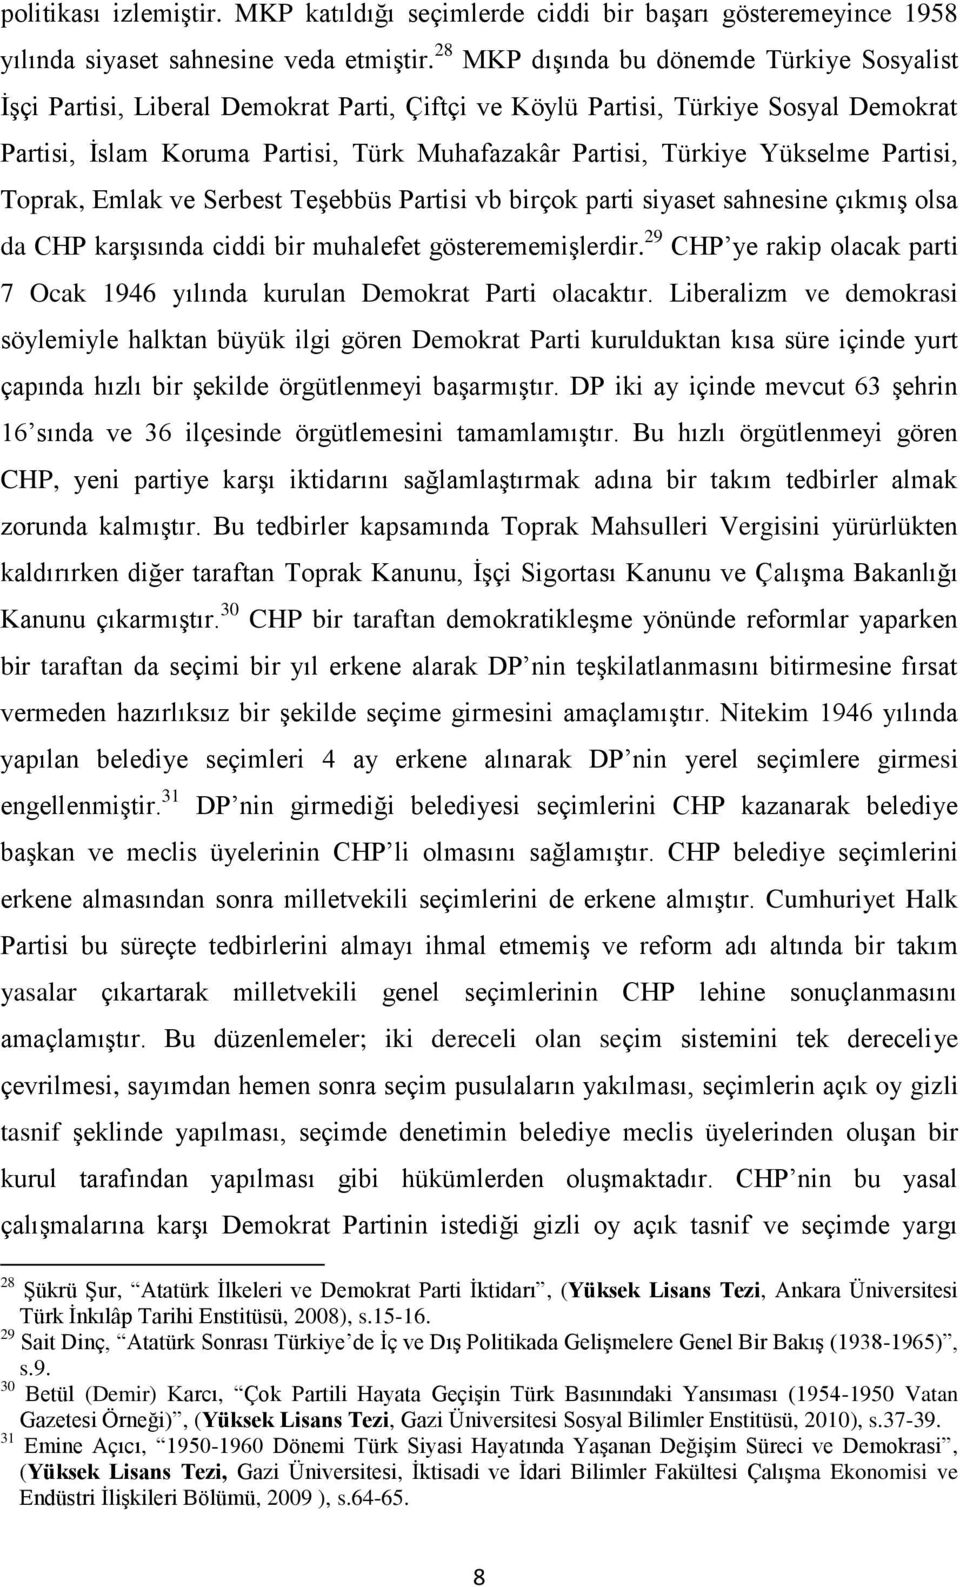 Yükselme Partisi, Toprak, Emlak ve Serbest Teşebbüs Partisi vb birçok parti siyaset sahnesine çıkmış olsa da CHP karşısında ciddi bir muhalefet gösterememişlerdir.